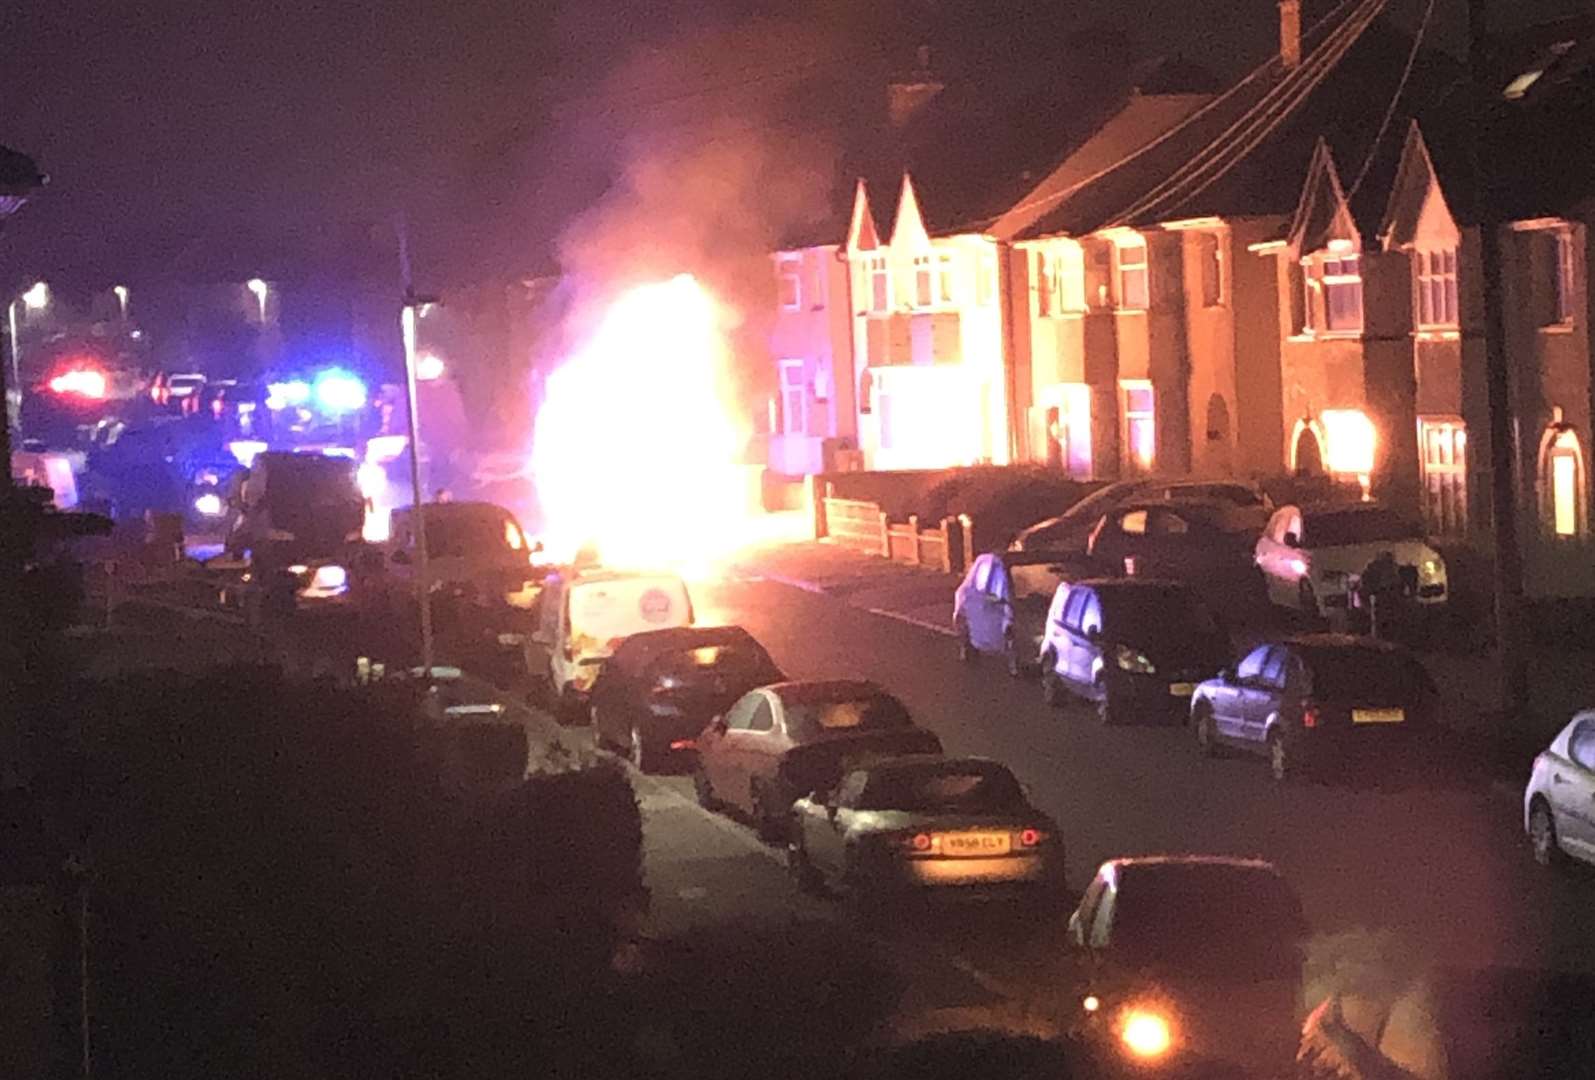 Emergency services were called to a van fire in Coyler Road, Northfleet